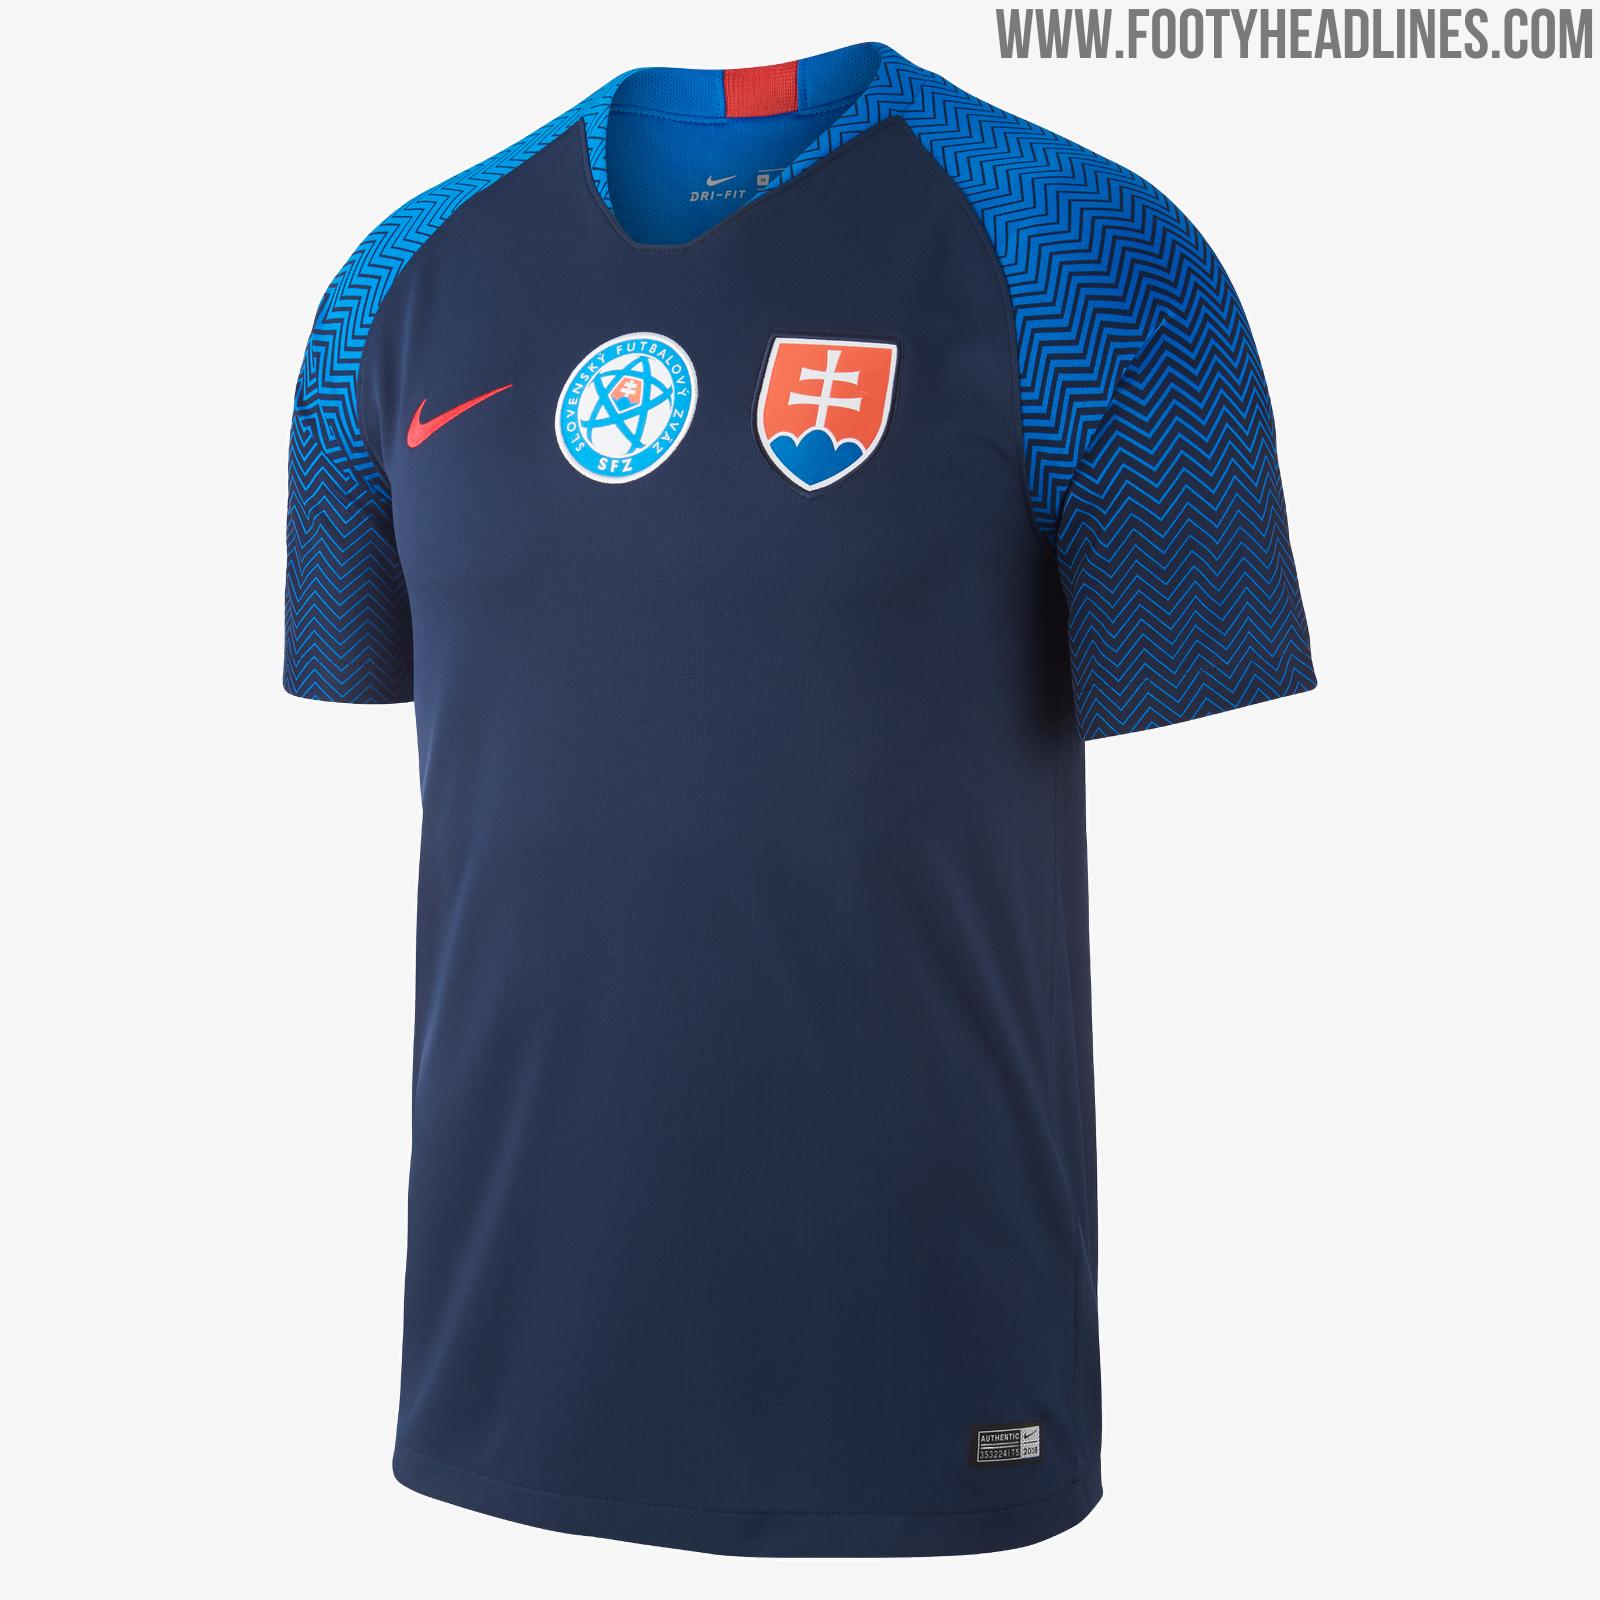 slovakia-2018-home-away-kits-5.jpg